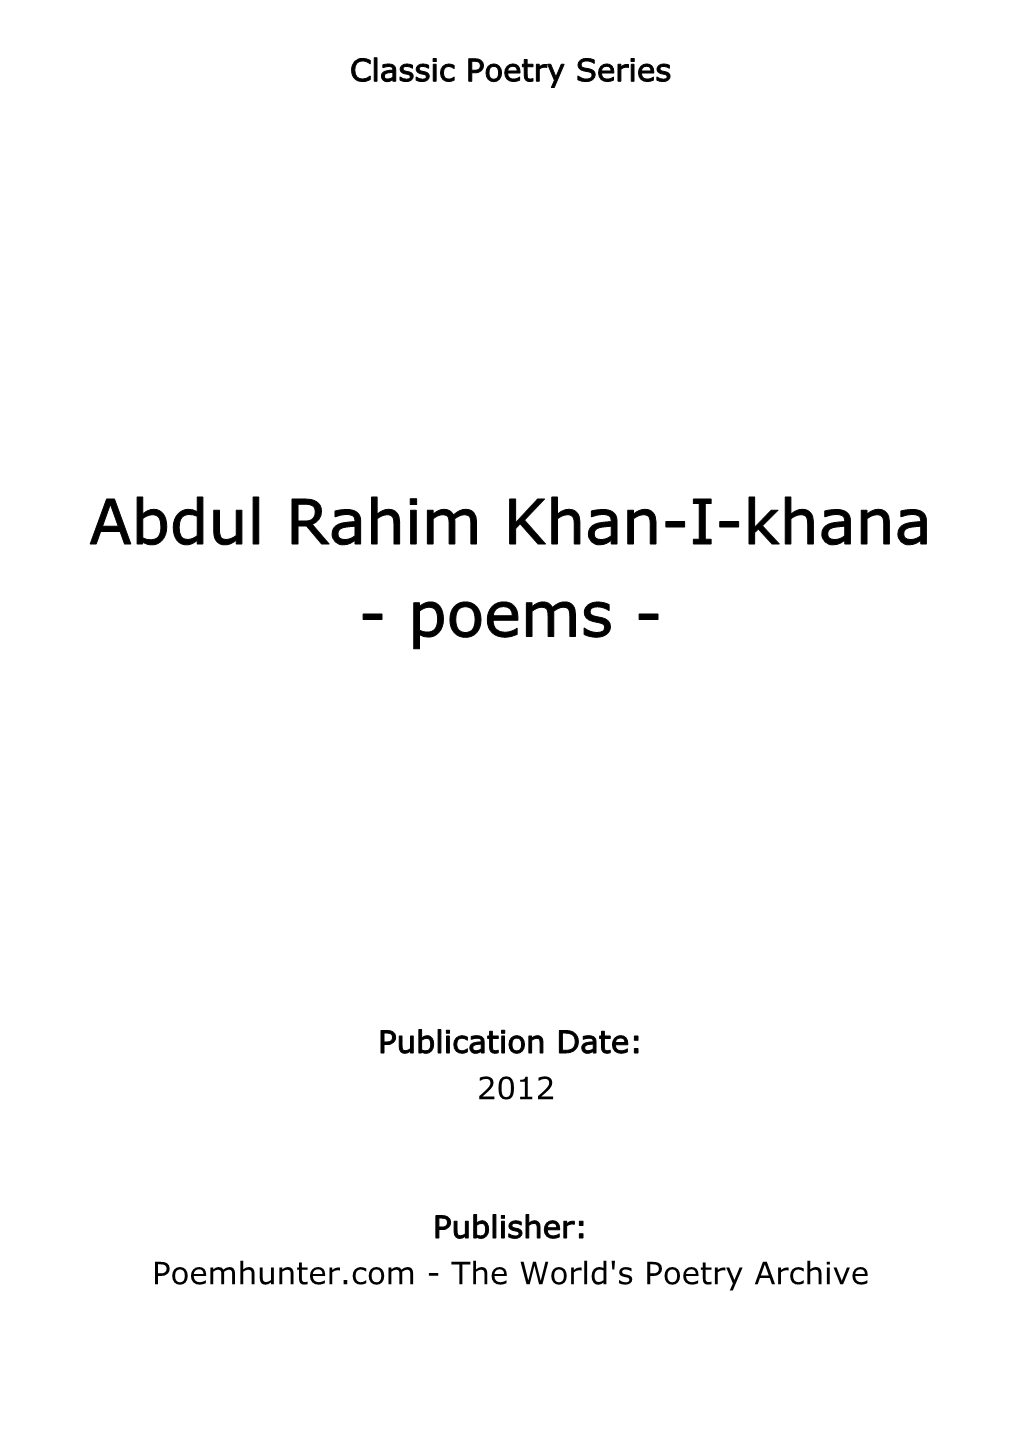 Abdul Rahim Khan-I-Khana - Poems